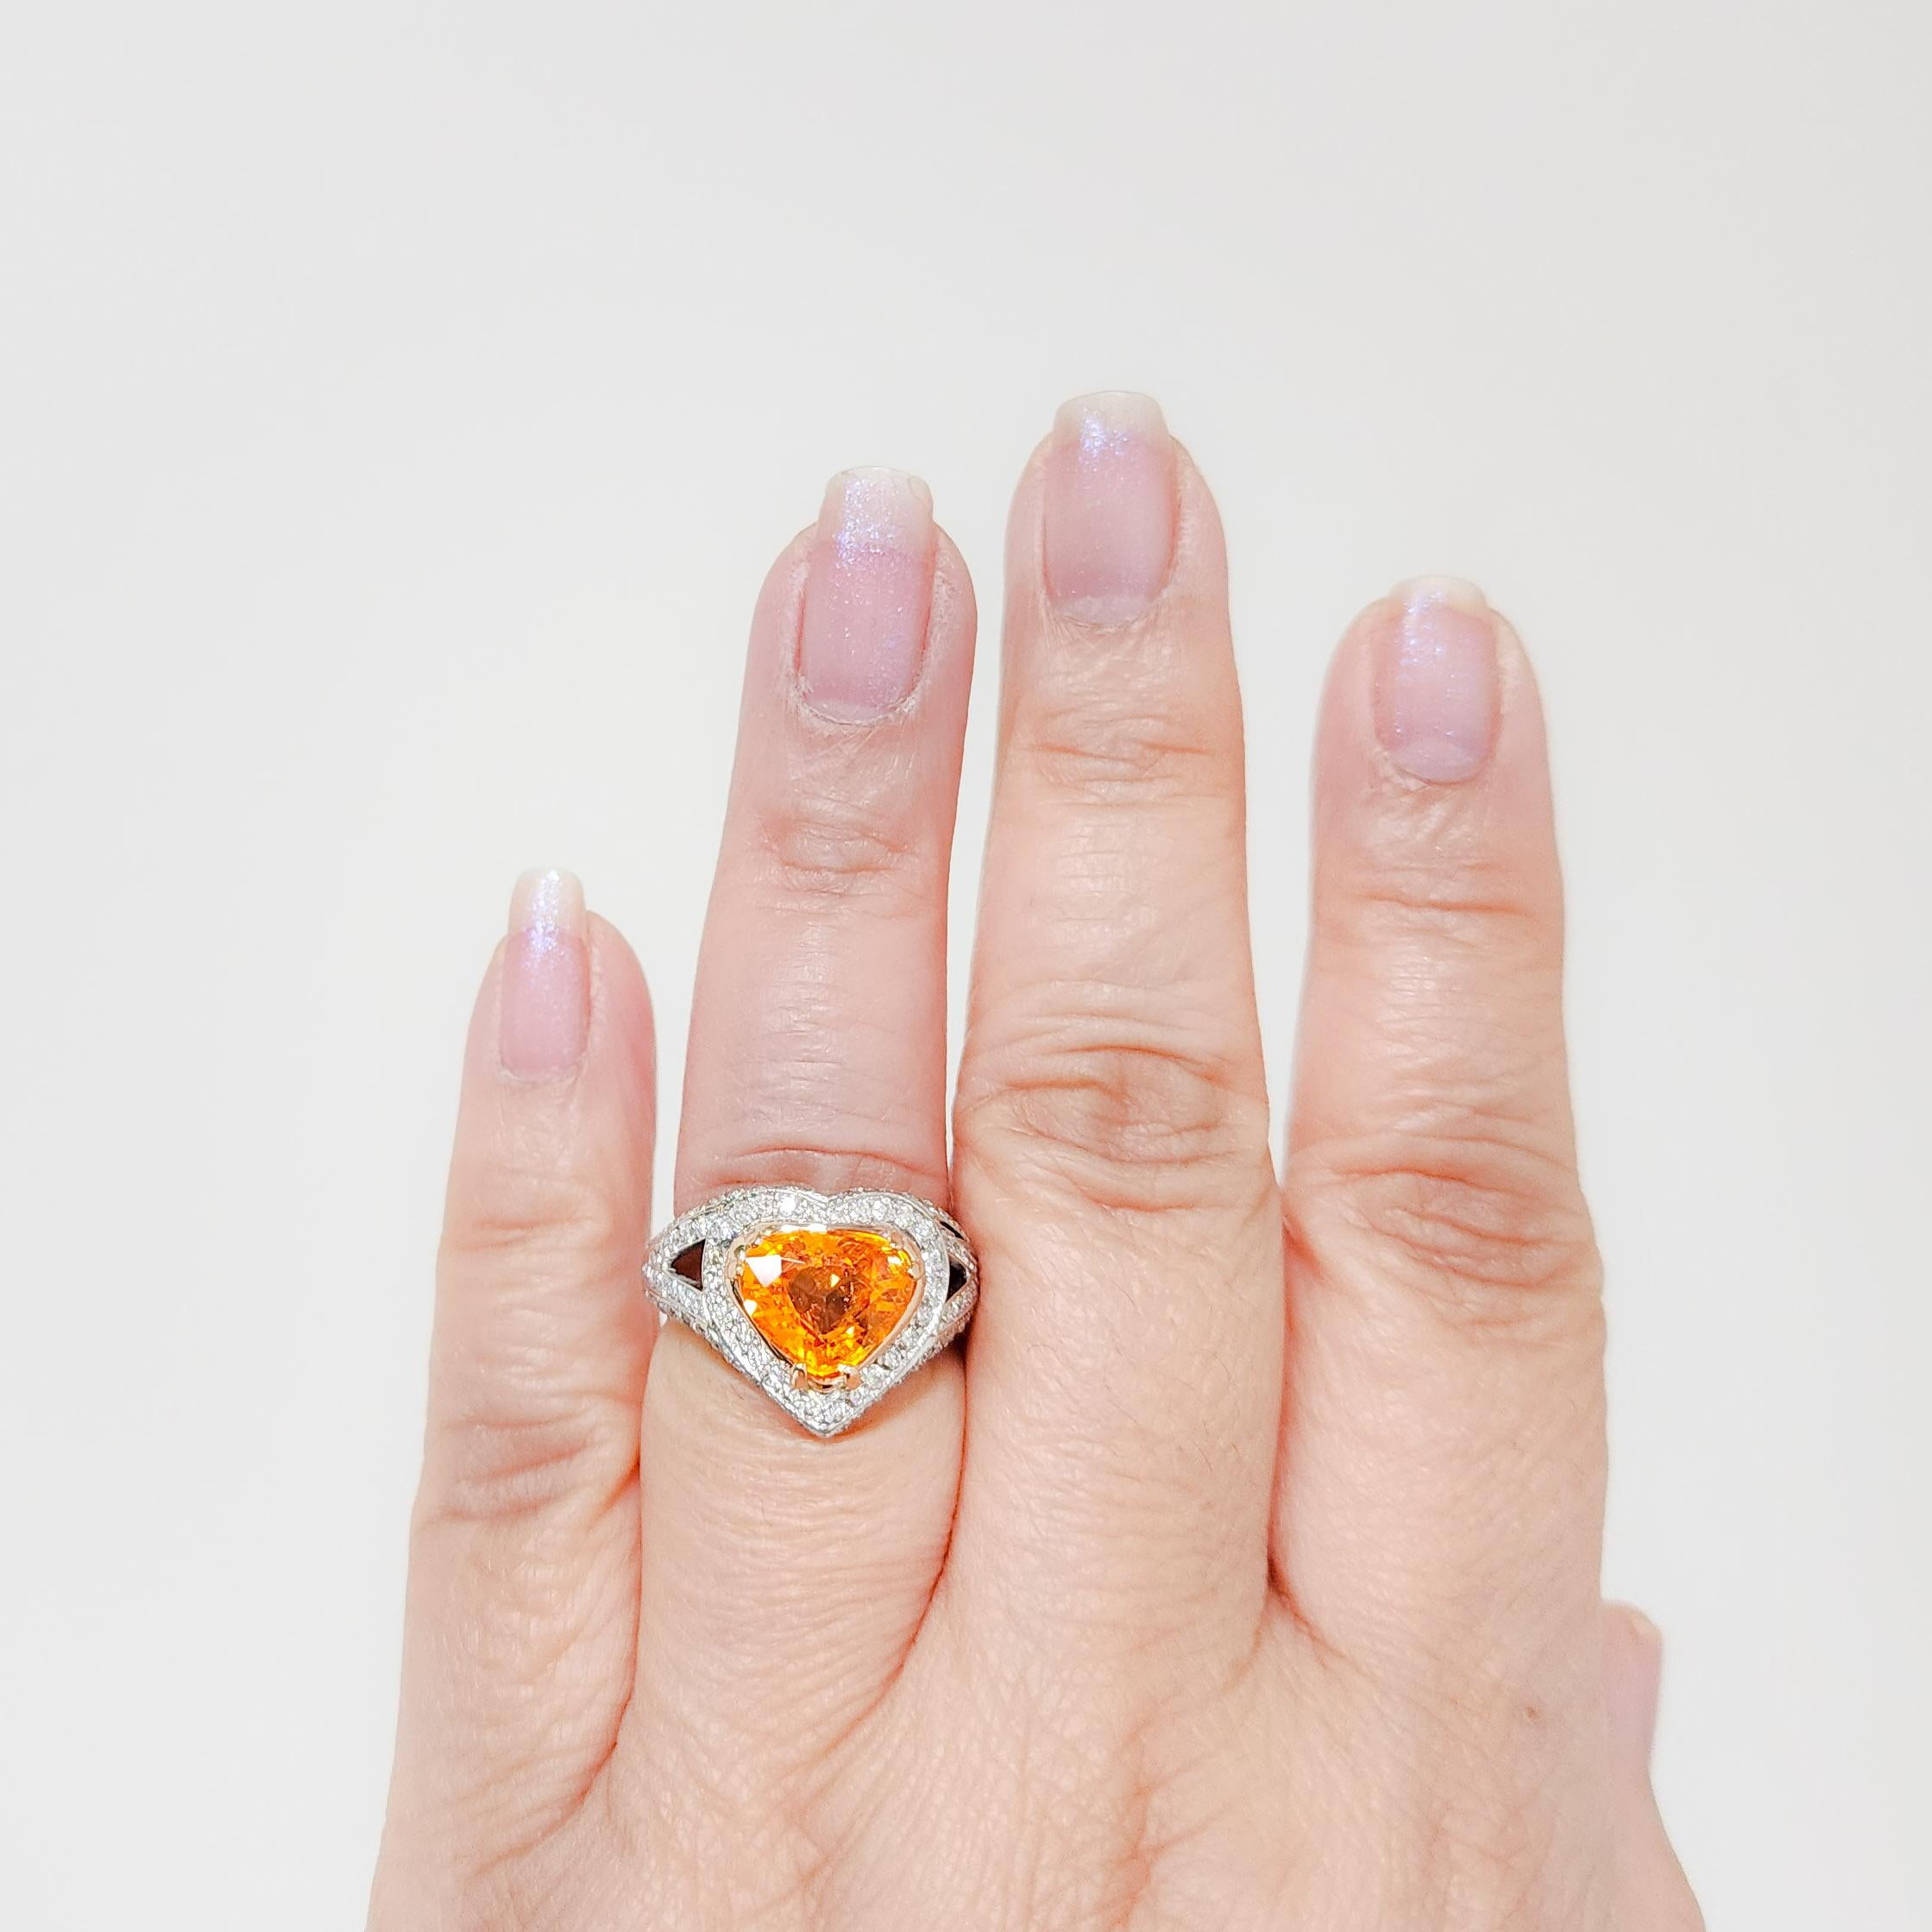 Magnifique 3,95 ct. Grenat mandarin en forme de poire avec 2,00 ct. de diamants blancs ronds de bonne qualité.  Fabriqué à la main en platine et en or jaune 18k.  Bague taille 6.75.